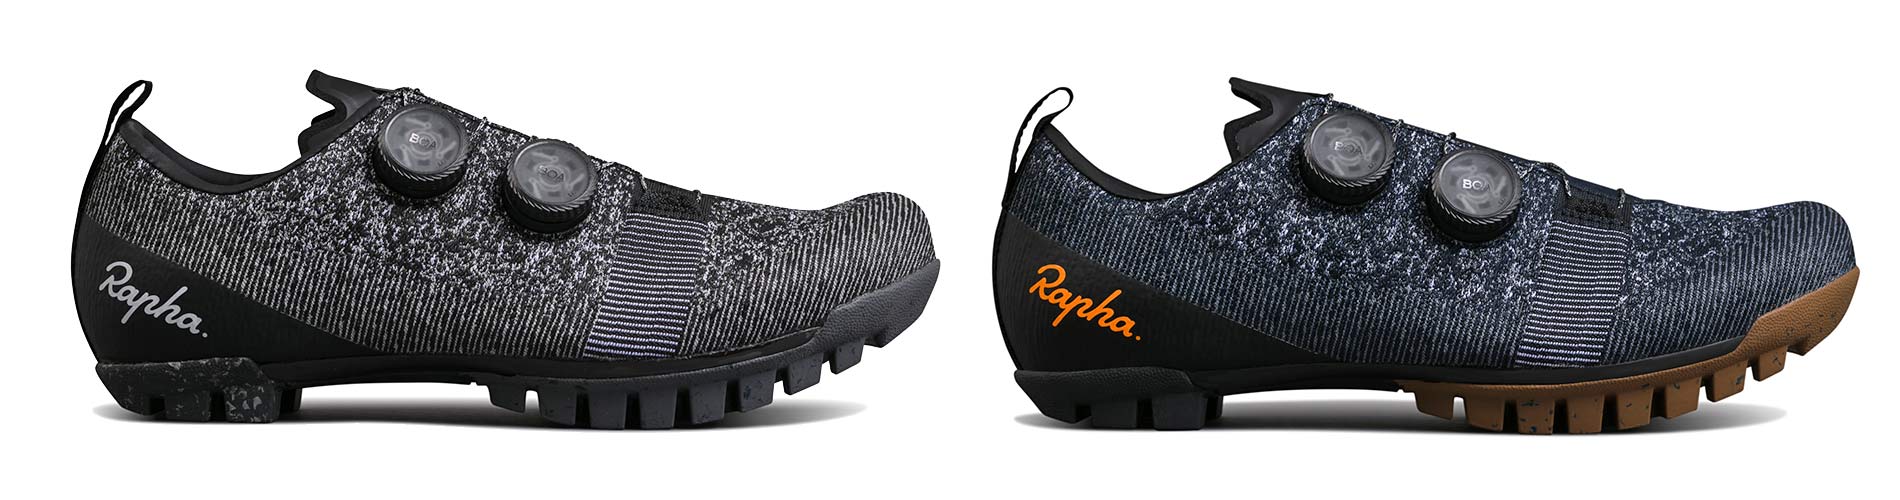 Rapha Explore Powerweave carbon-soled gravel bike shoes, colors black or navy blue